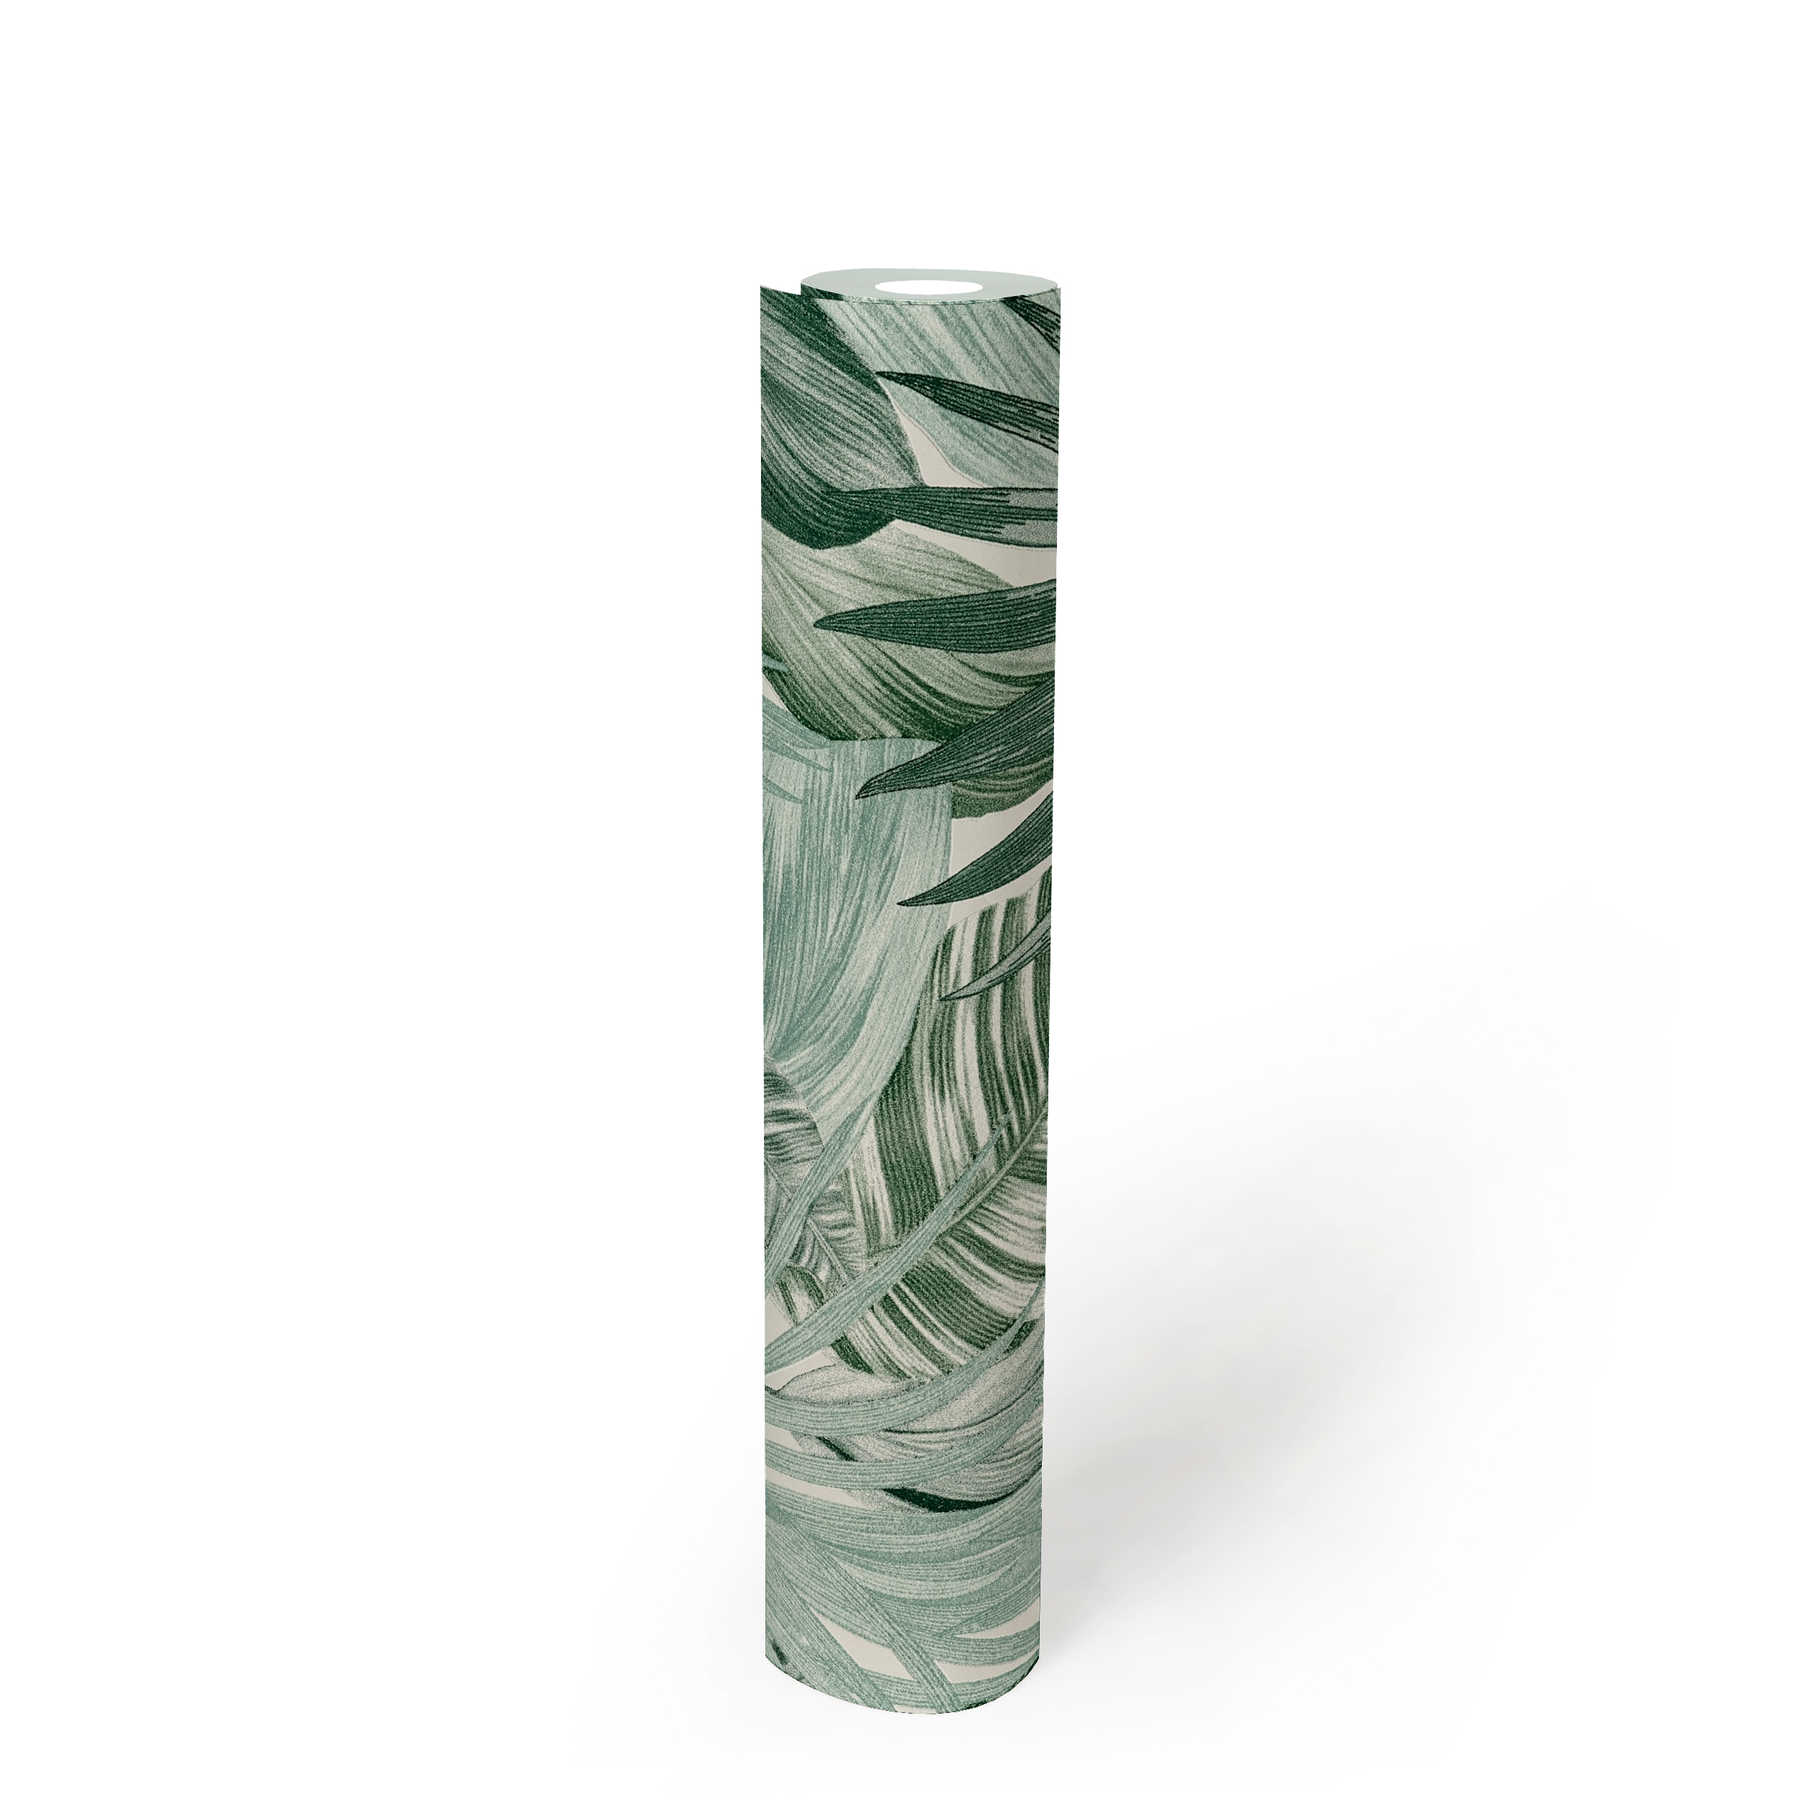             Mustertapete mit Blättermotiv im Zeichenstil – Grün, Weiß
        